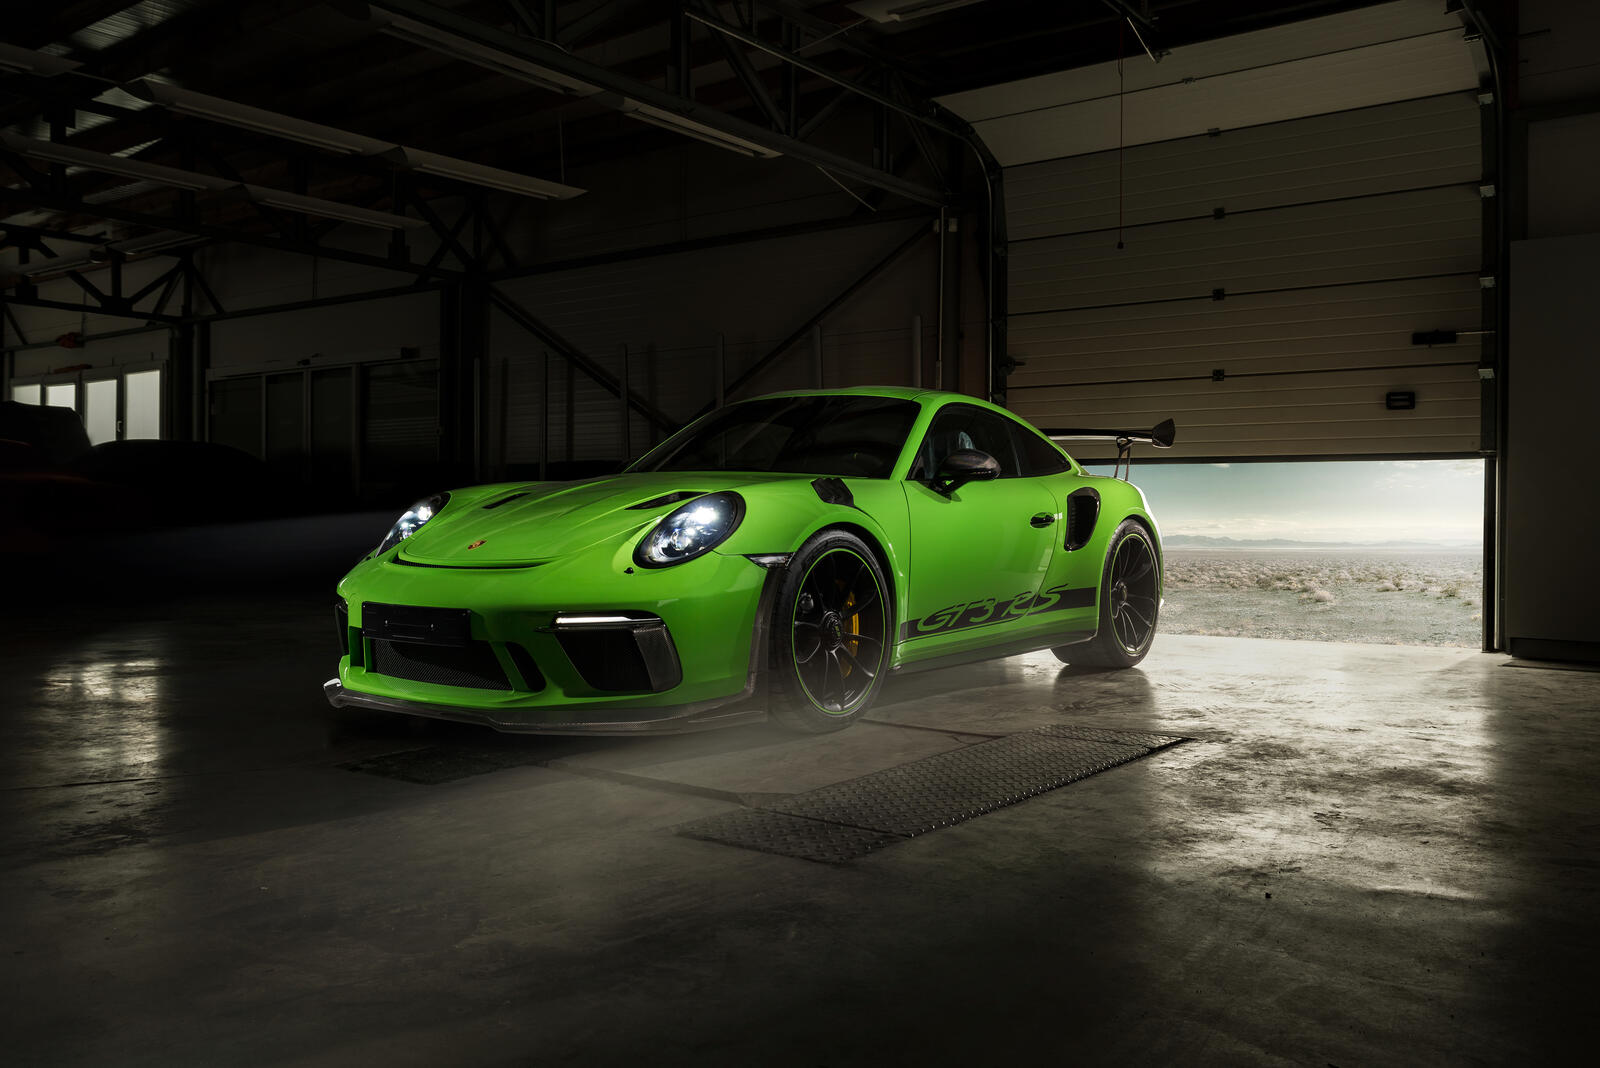 Wallpapers Porsche GT3 Behance cars on the desktop